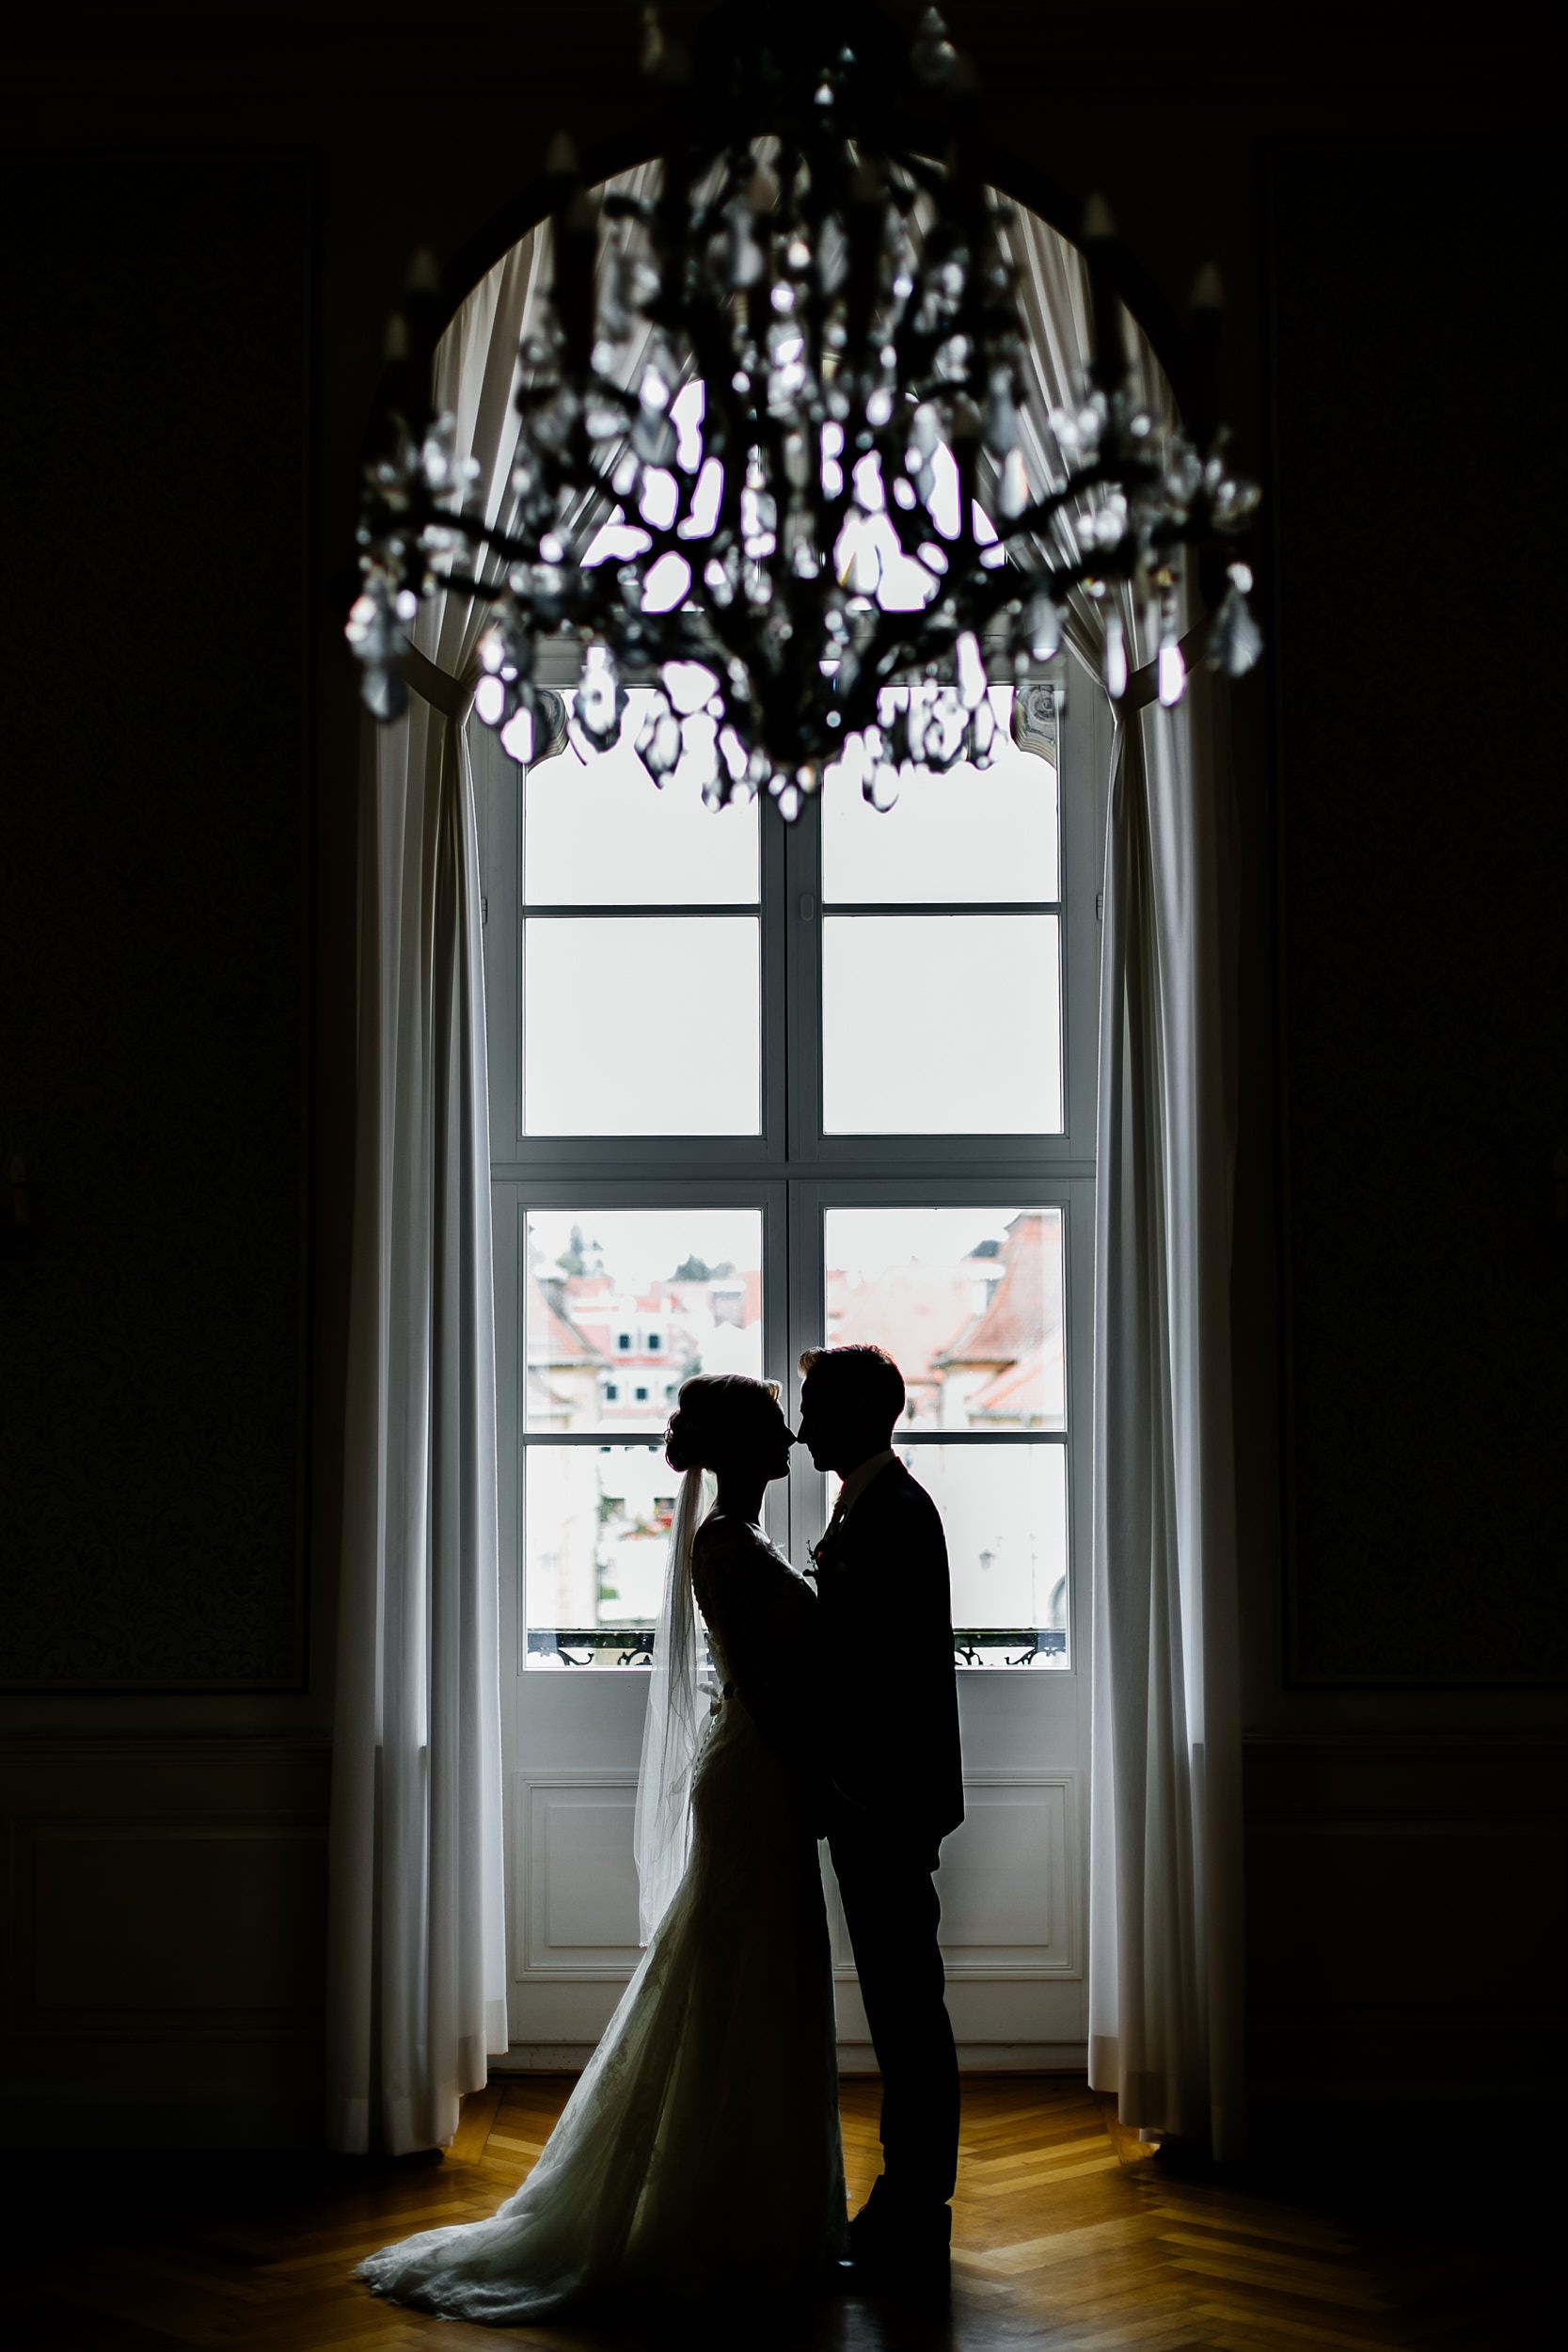 Fotoshooting am Hochzeitstag. Brautpaar Steht im Schloss am Fenster - Profilaufnahme. Hochzeitsfotograf in Schweinfurt.